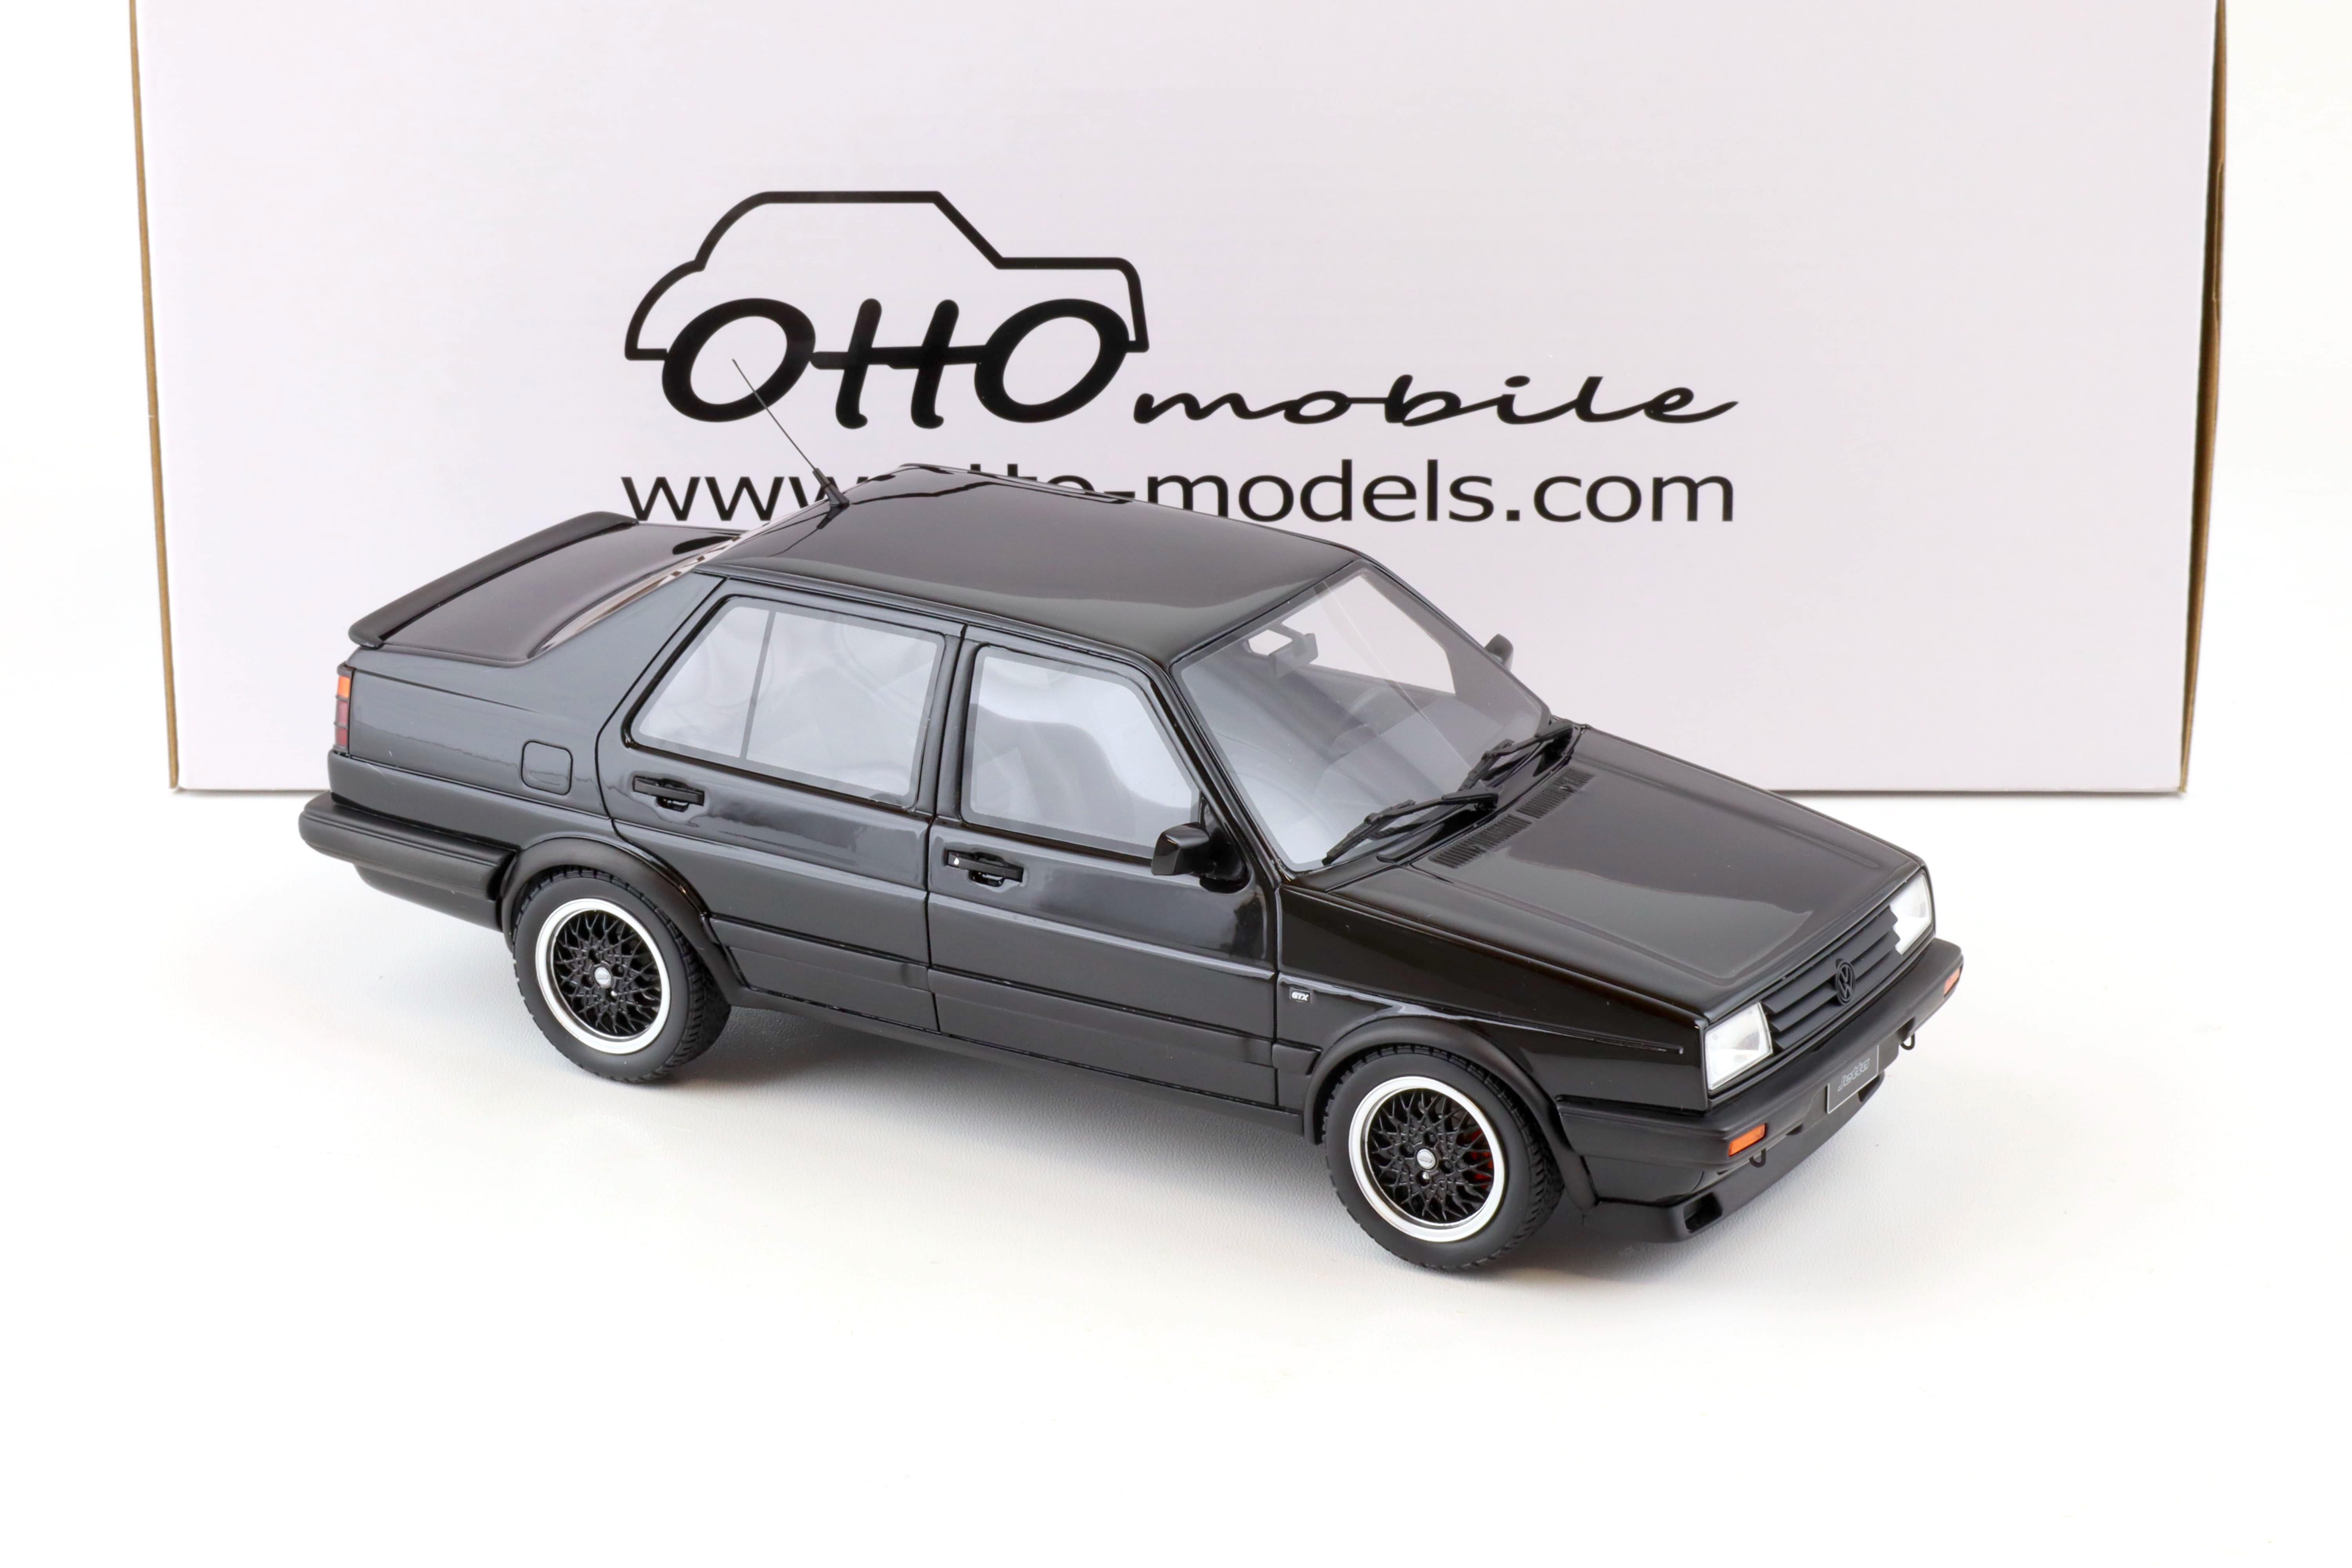 1:18 OTTO mobile OT1021 VW Jetta MK2 Sedan black 1987